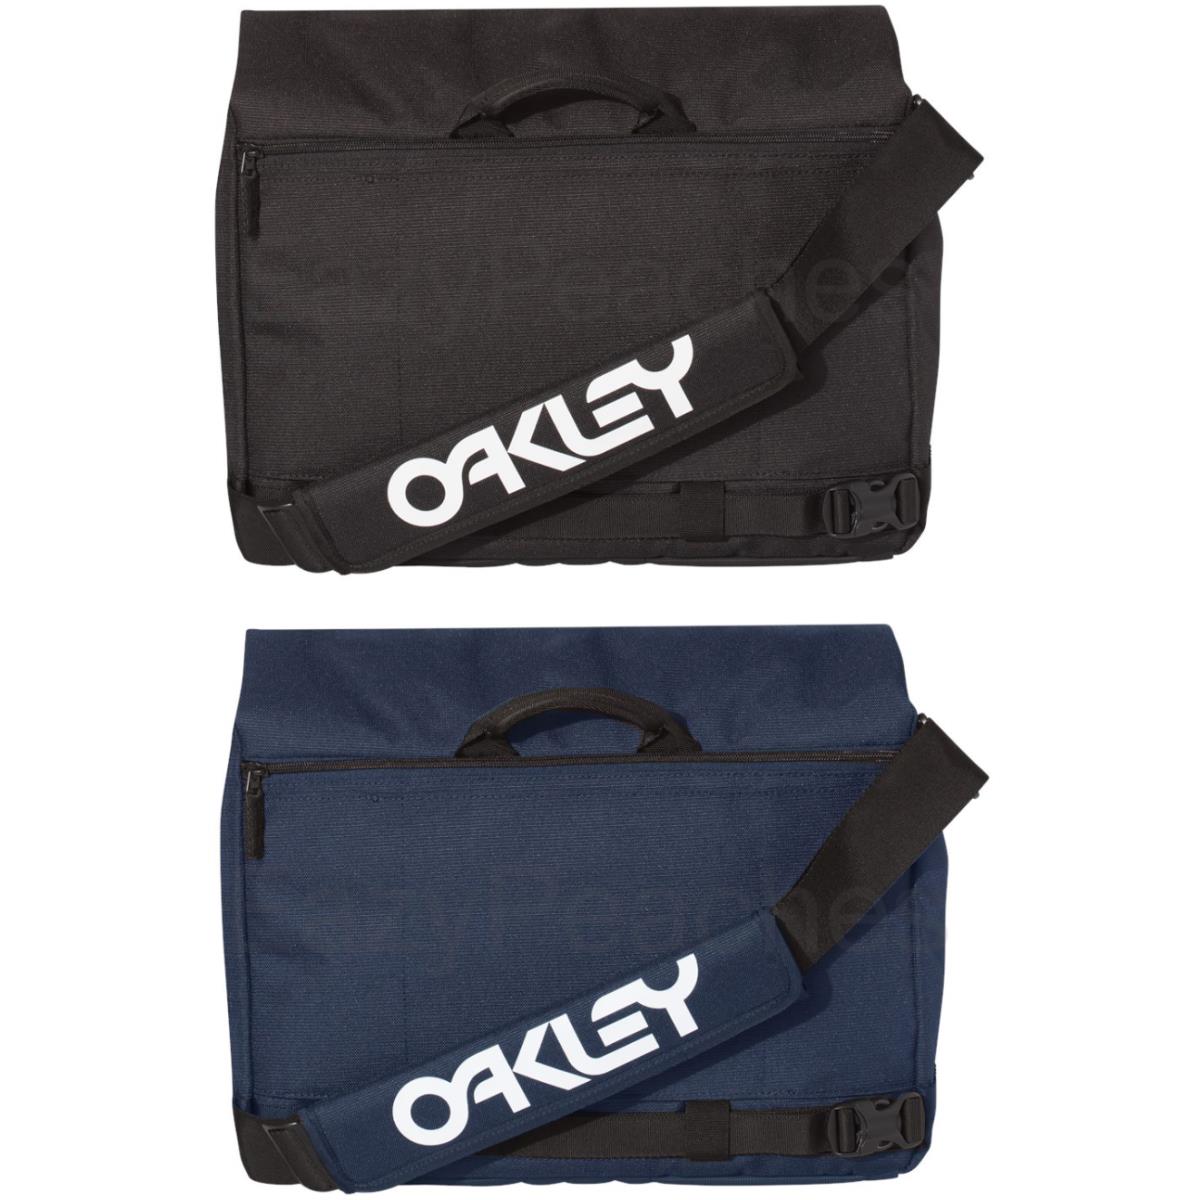 Oakley 15L Street Messenger Bag School Travel Computer Shoulder Pack - Black, Navy